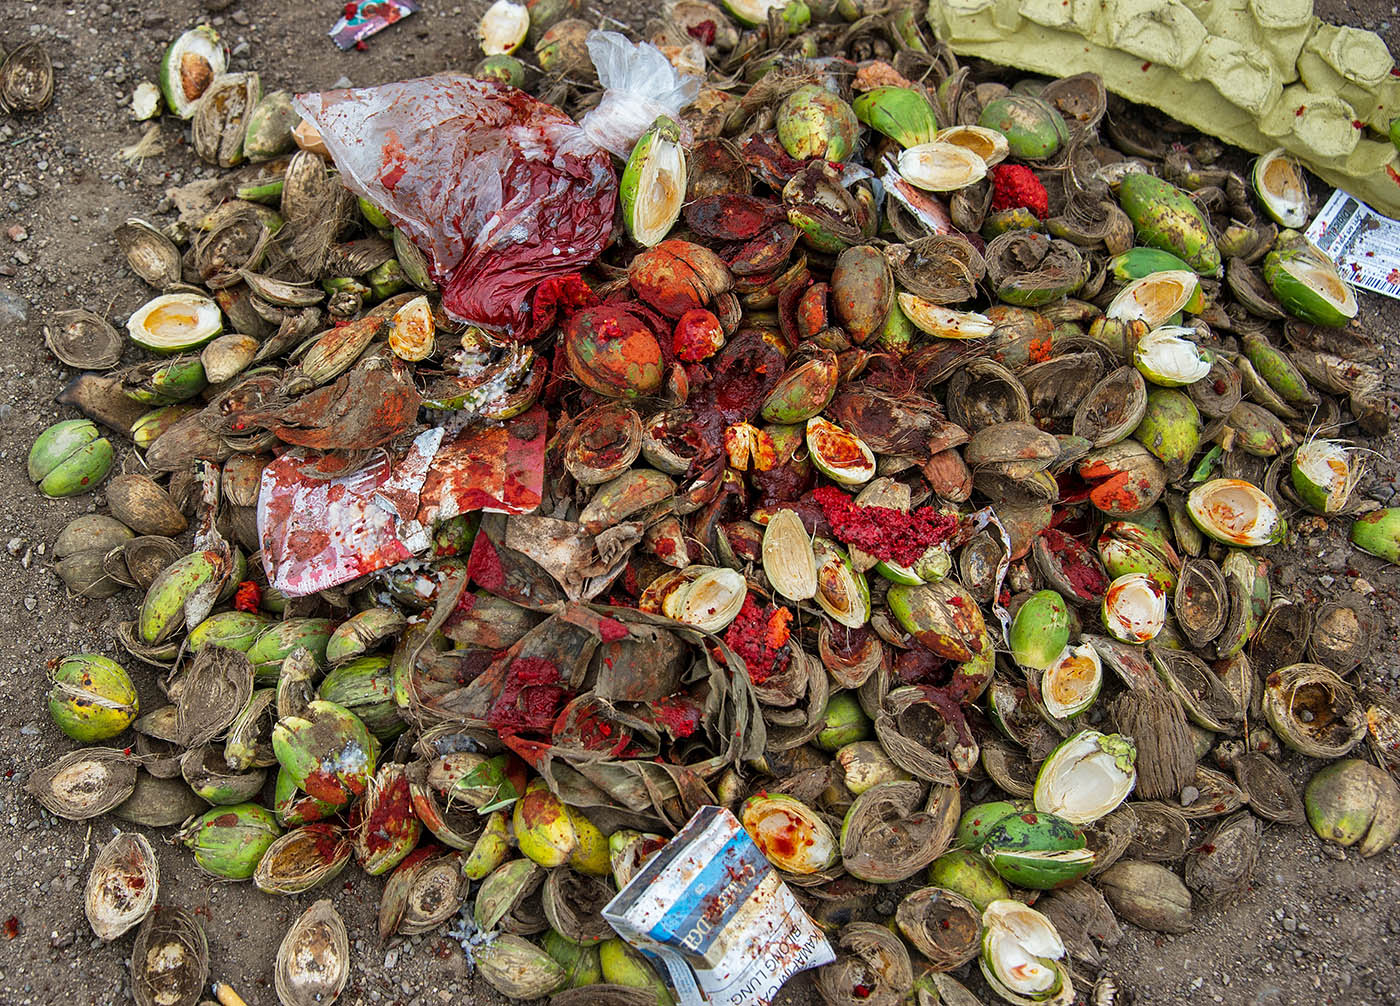 丢弃的槟榔果和槟榔吐在地上。来源:Lightgalleries.net